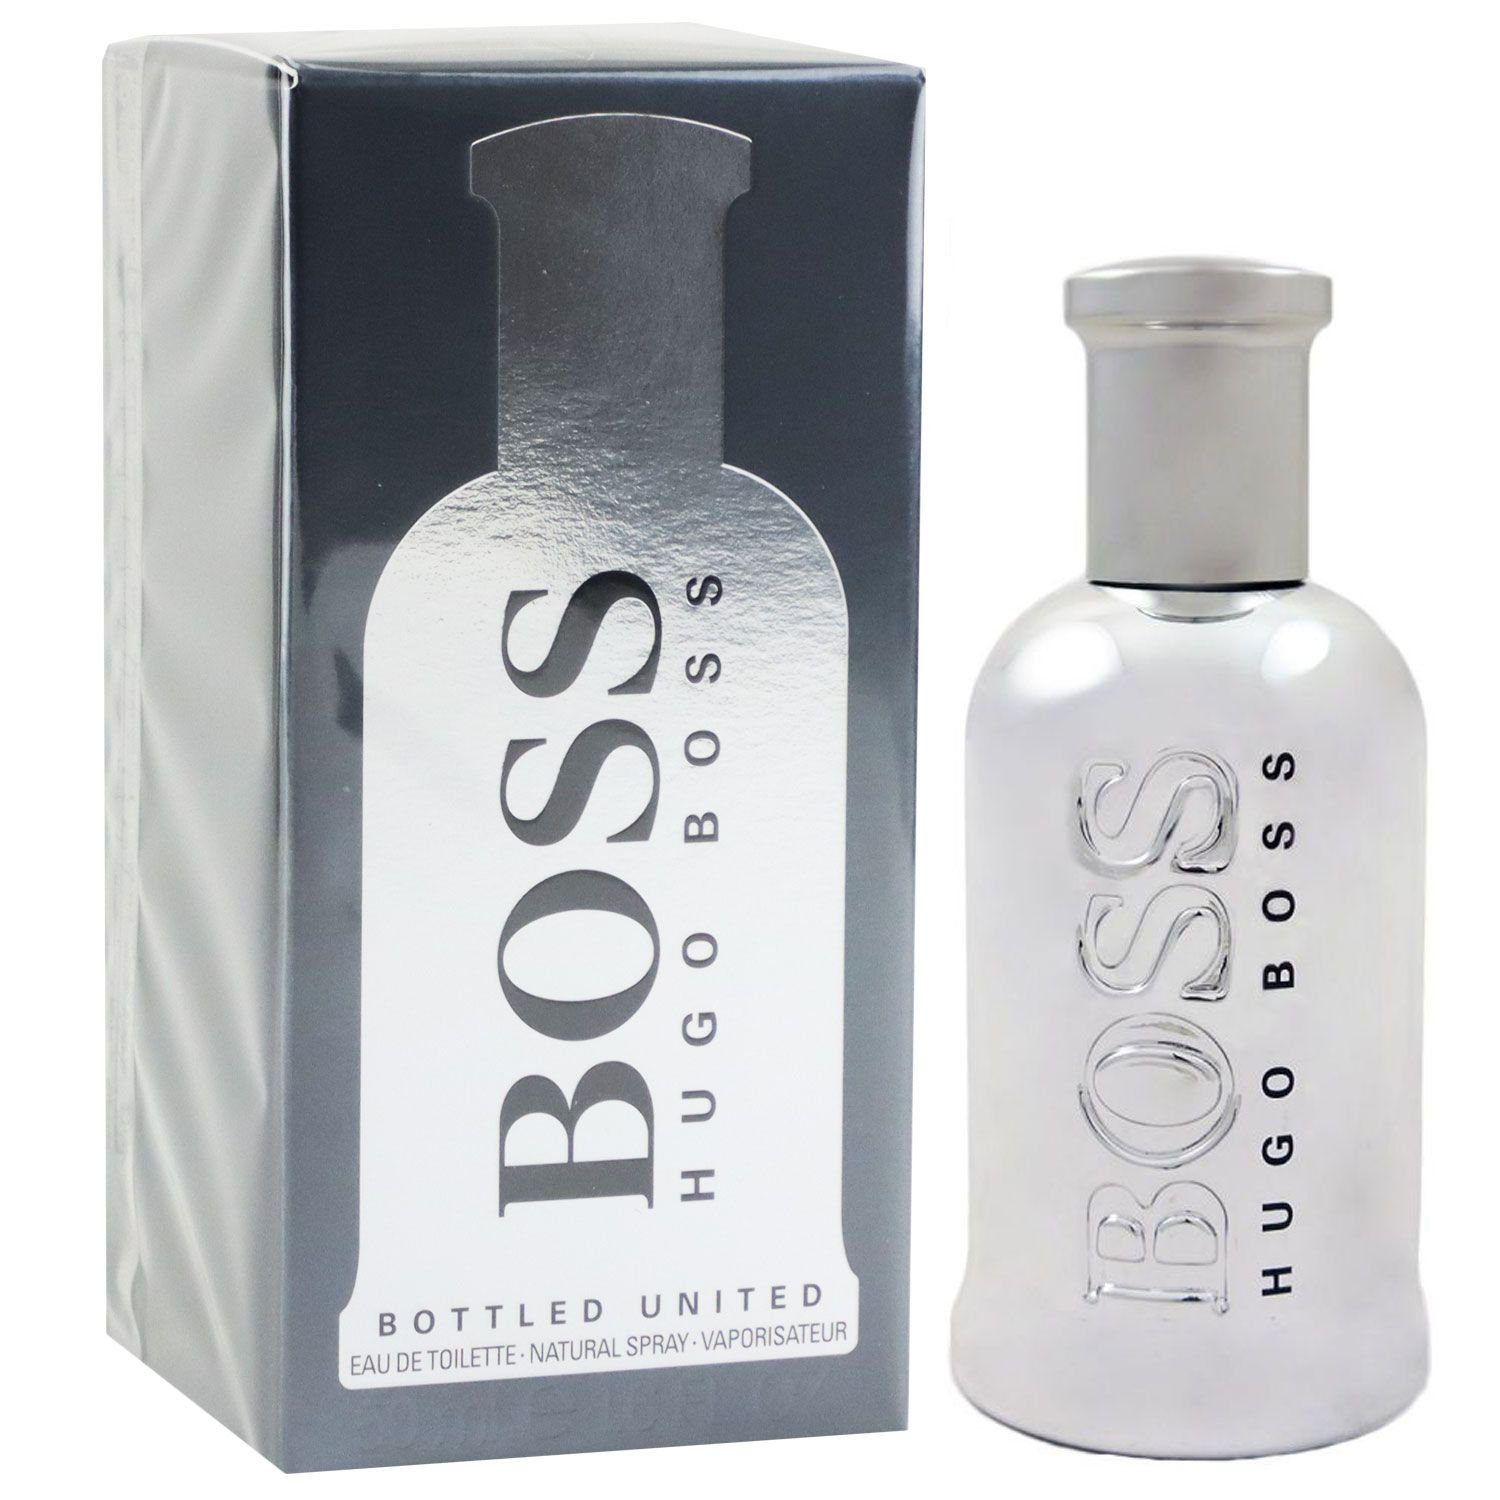 HUGO BOSS Parfum online kaufen | OTTO